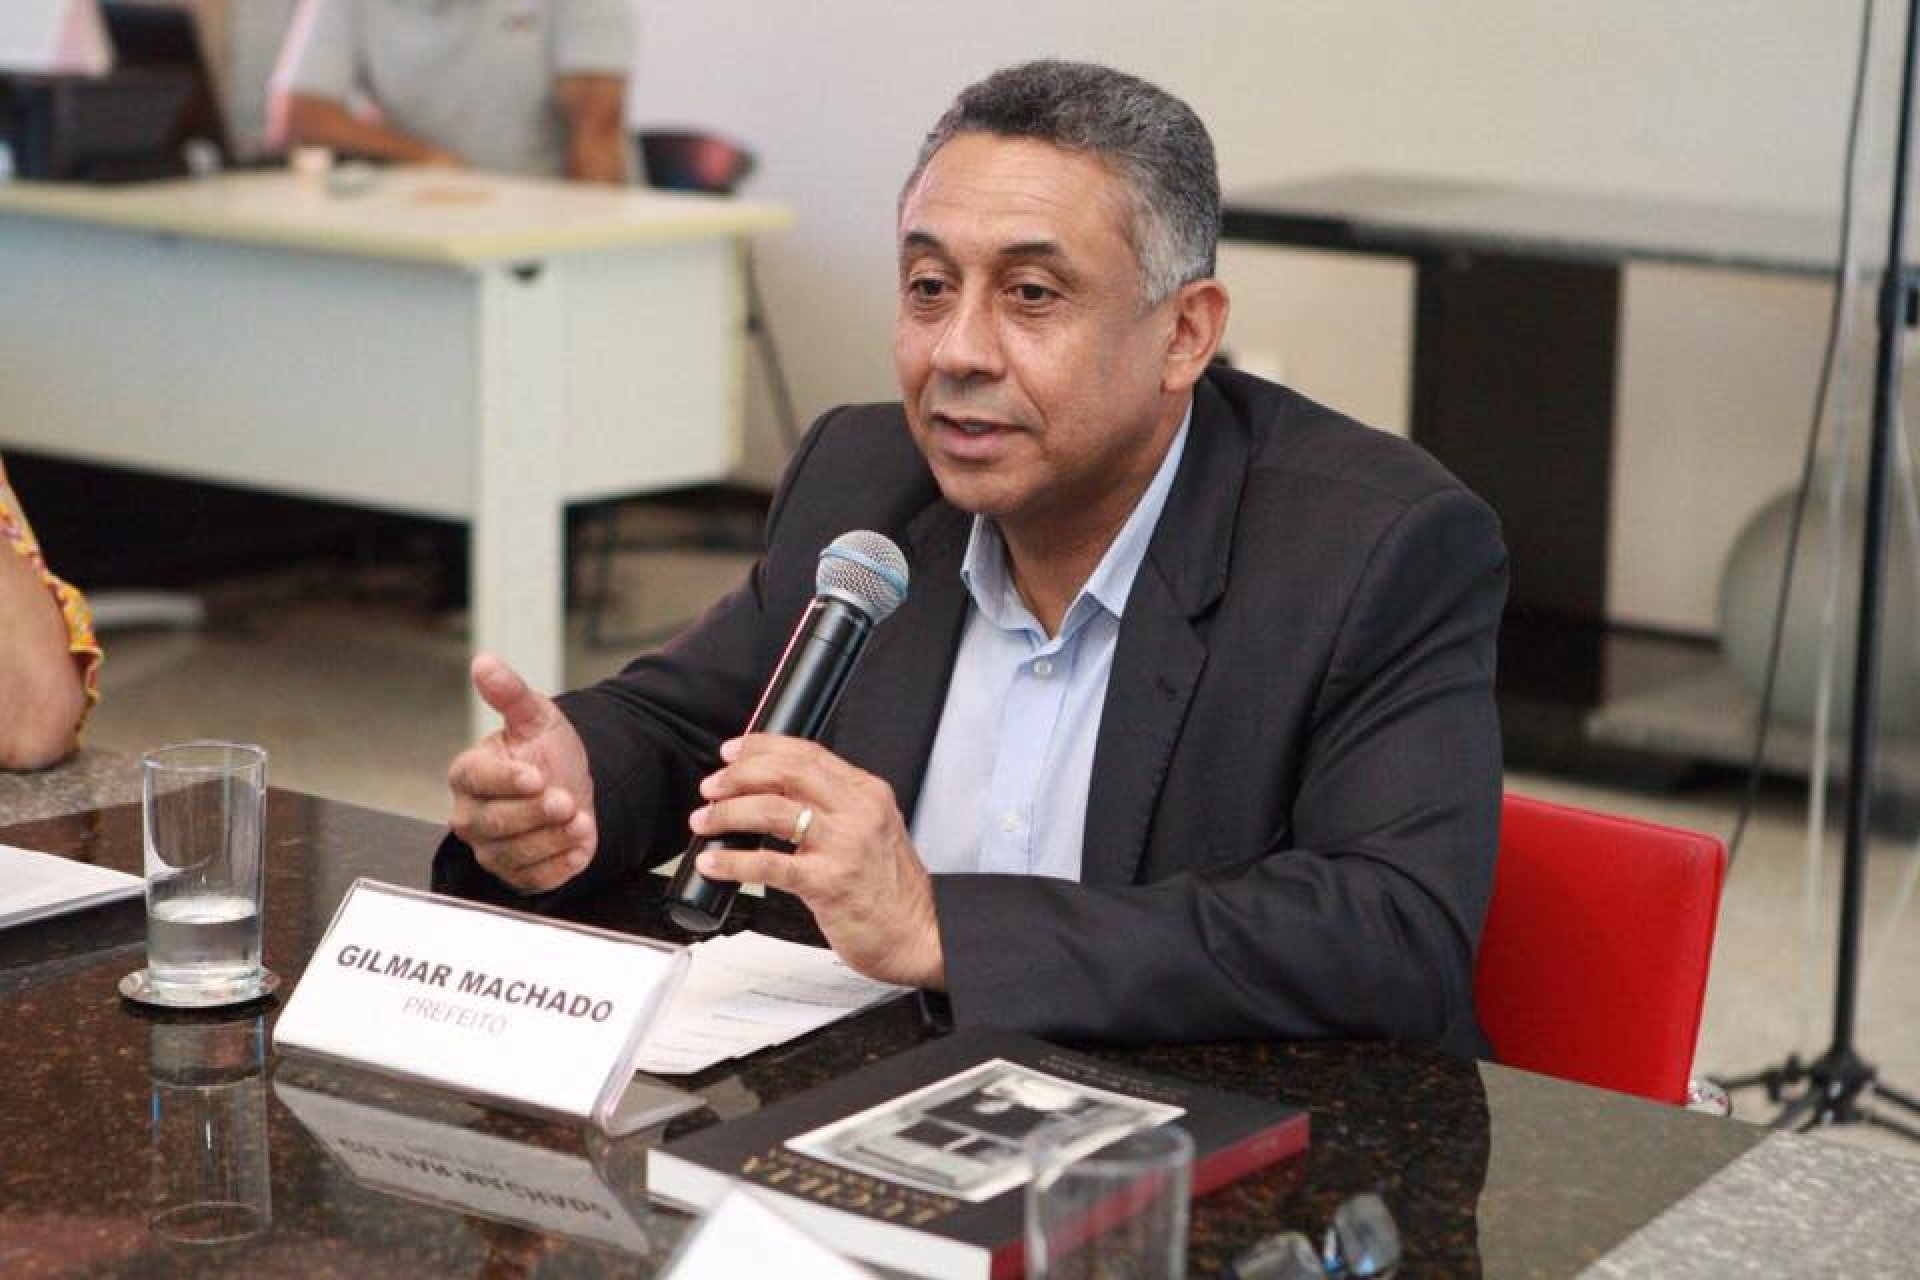 Gilmar Machado, ex-prefeito de Uberlândia. Foto: Educadora 909/Divulgação.